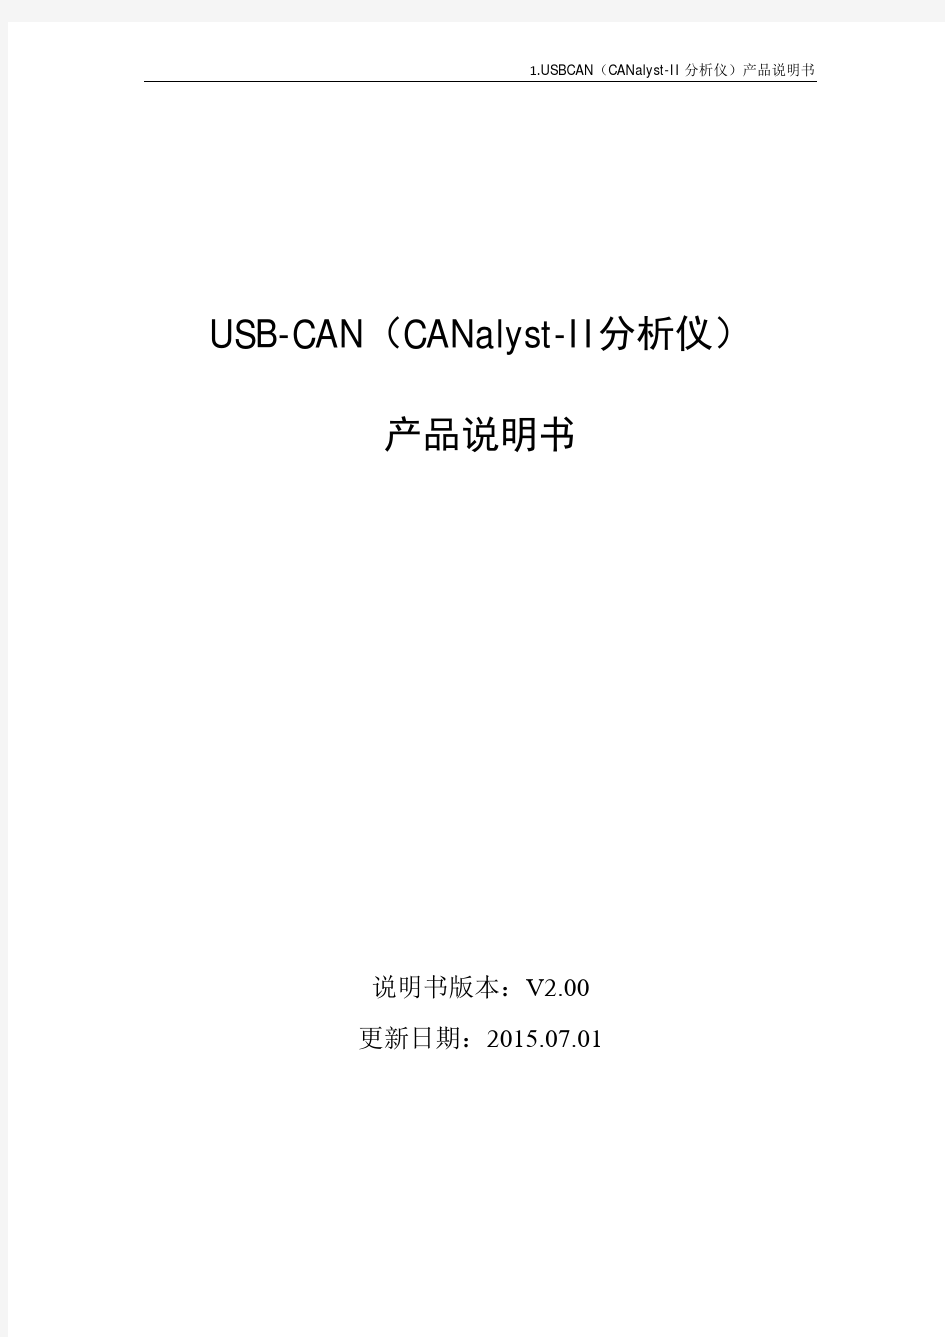 USBCAN CANalyst II分析仪 产品说明书